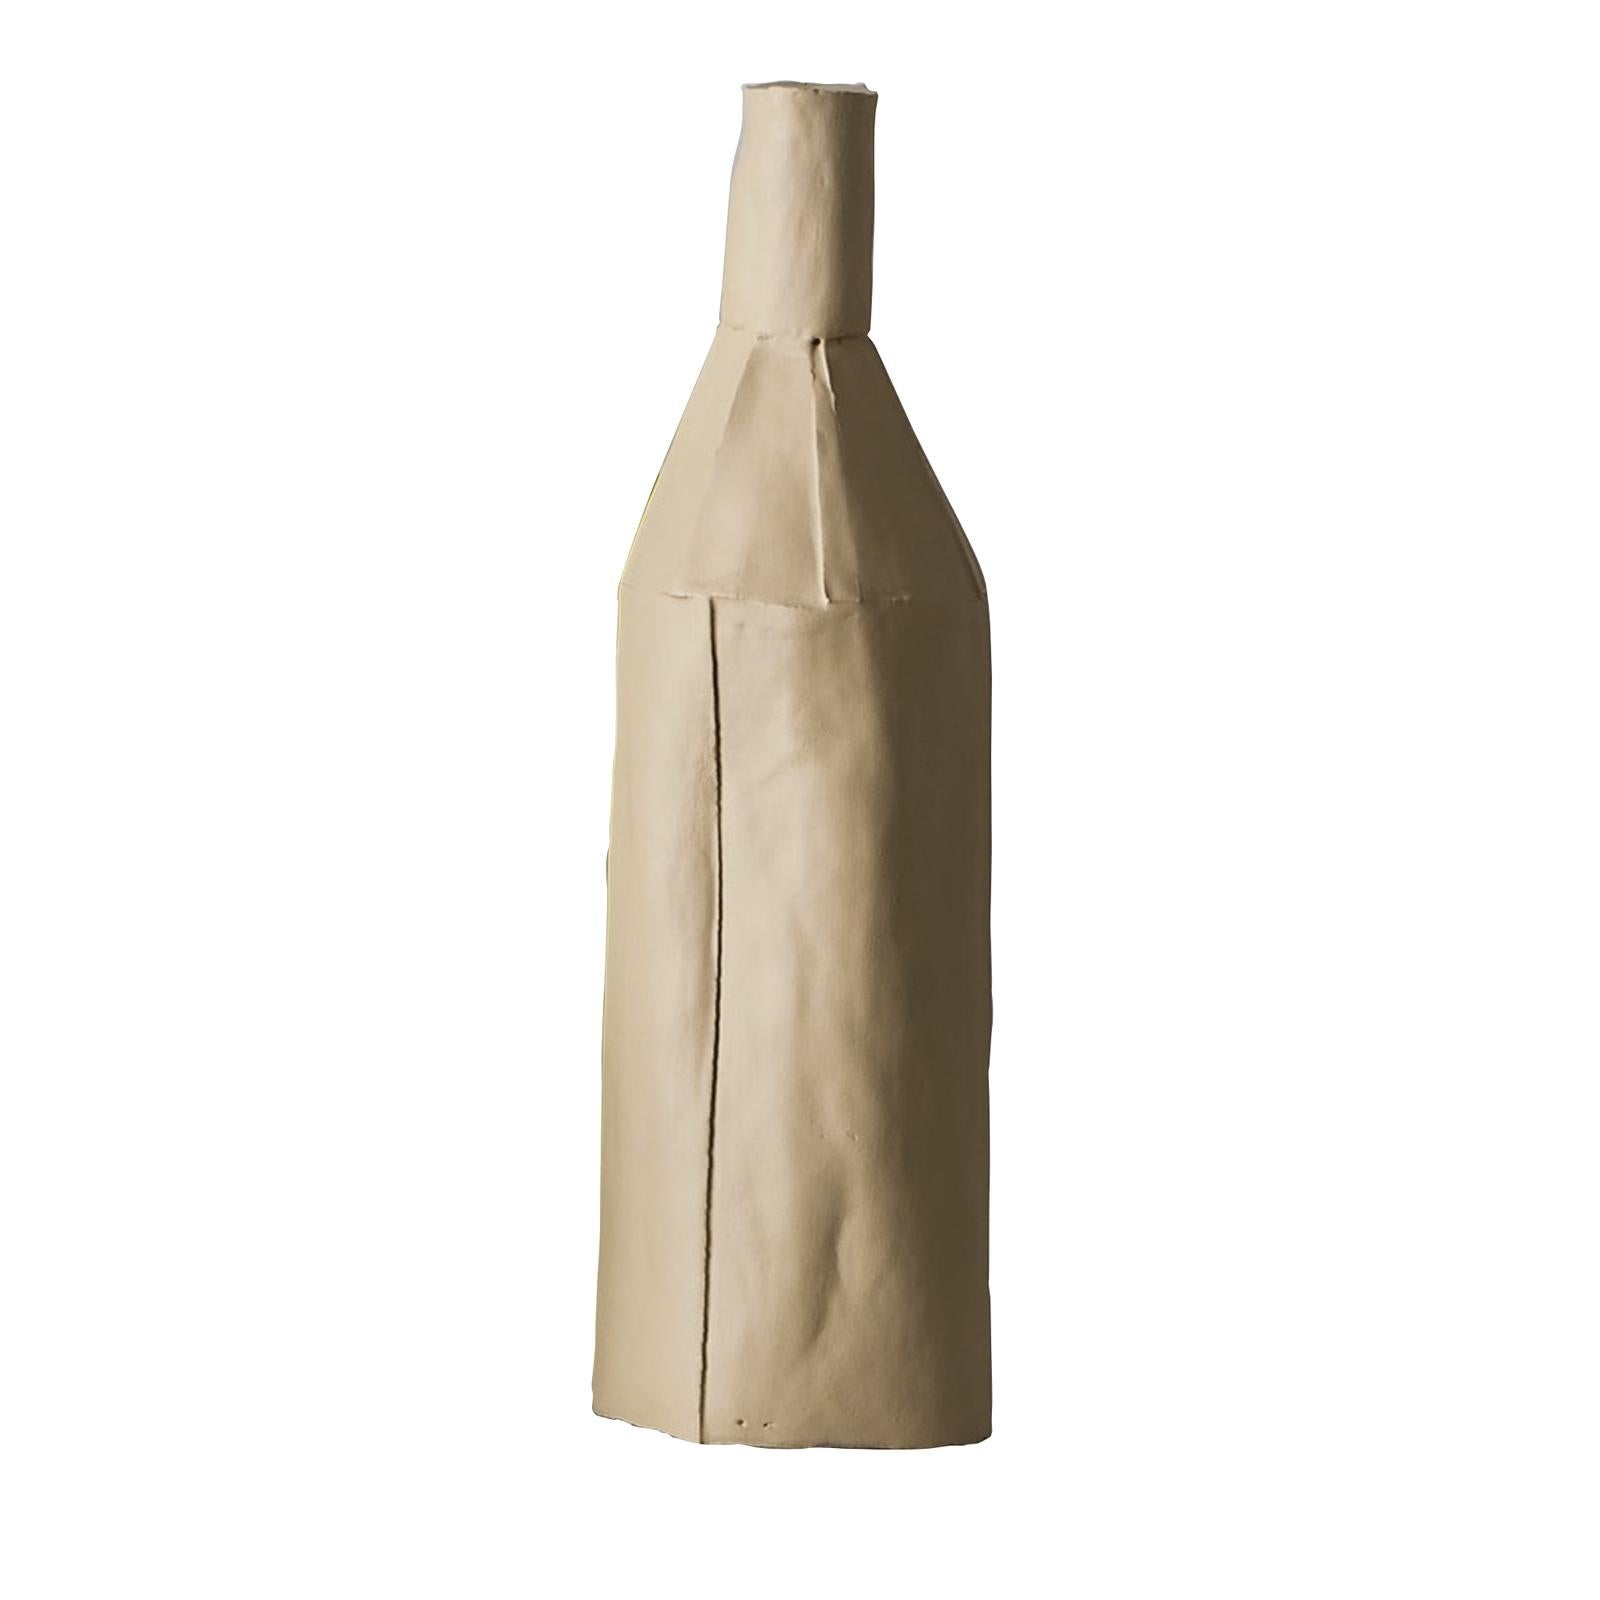 Cette sculpture en forme de bouteille, qui fait partie de la collection exclusive Cartocci, a été réalisée à la main avec de l'argile à papier, un mélange argile-base enrichi de fibres naturelles qui le rendent plus souple pendant la phase de